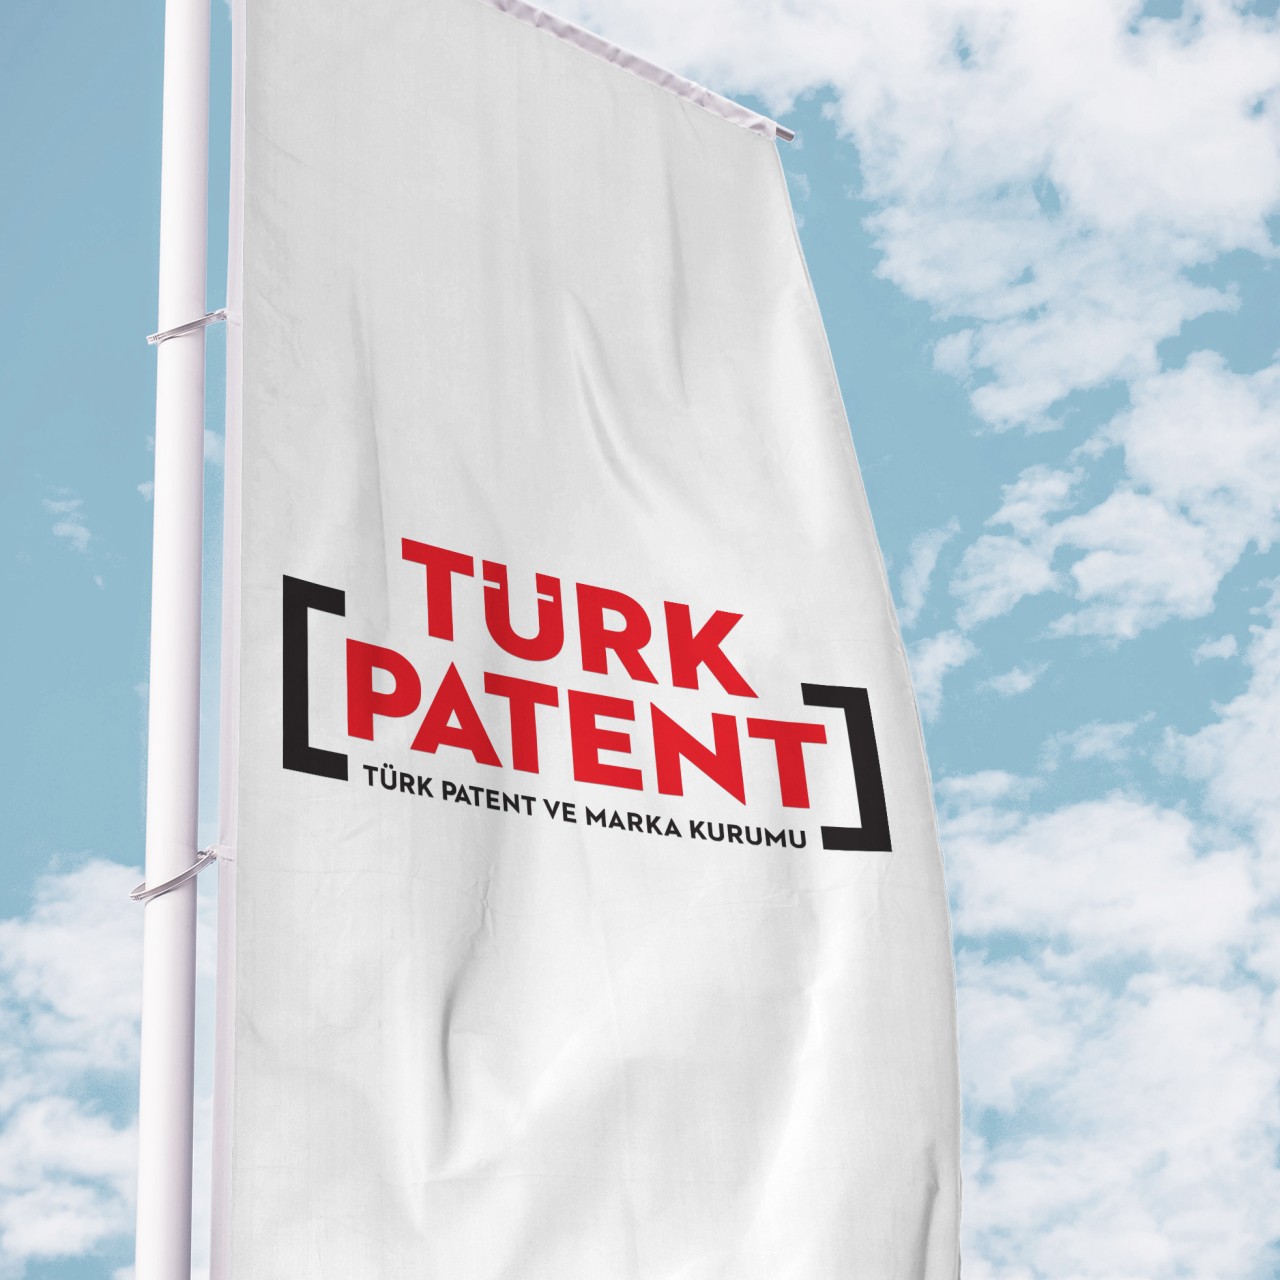 Erzurum patentte 5’inci sıradaki yerini korudu